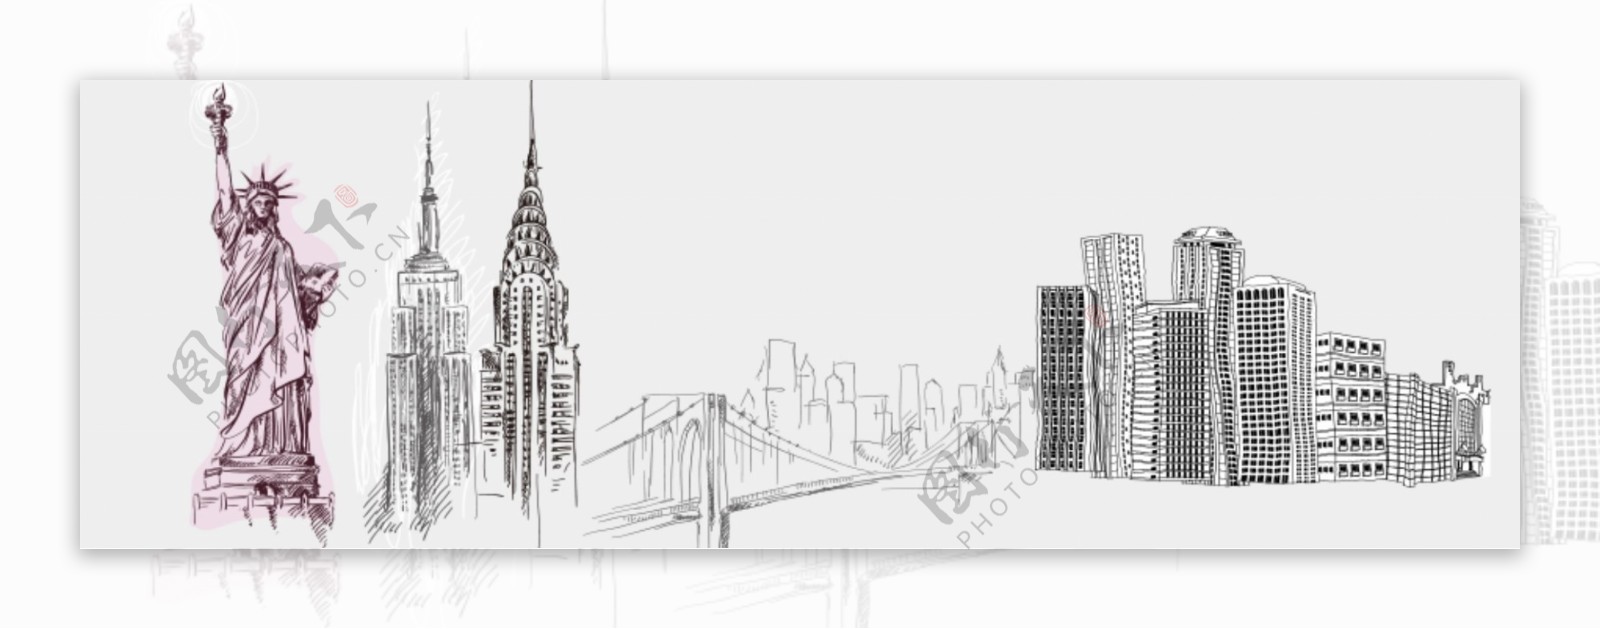 微博自定义封面图手绘美国城市